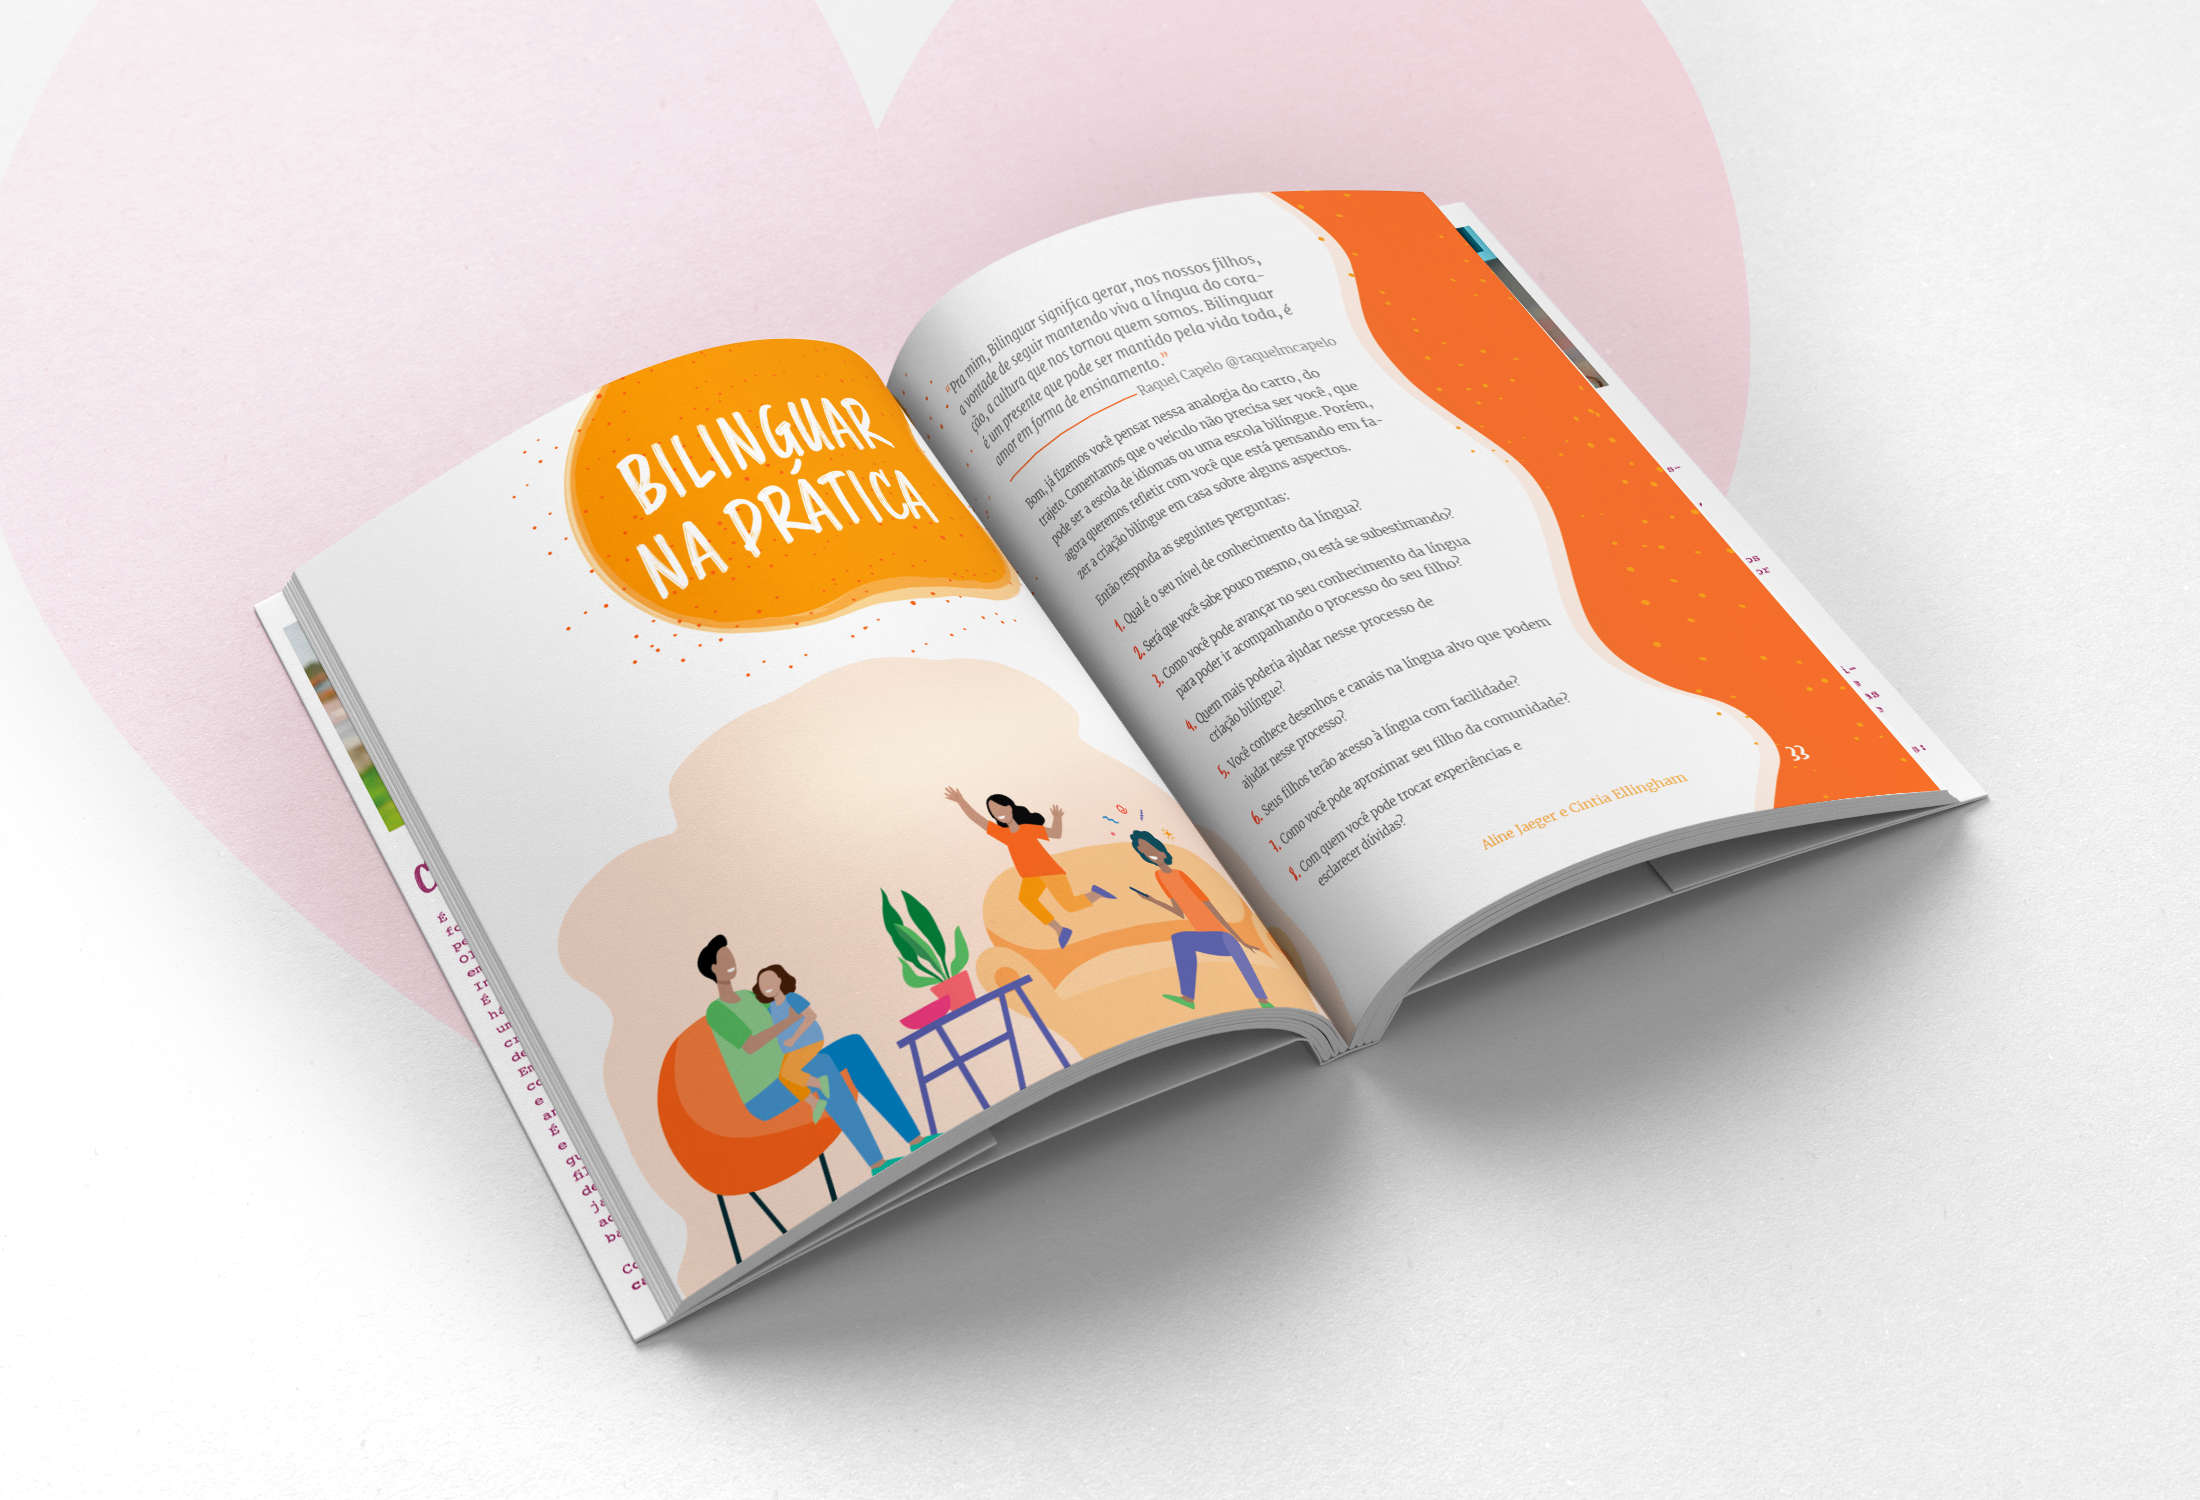 E-BOOK CRIANDO FILHOS BILÍNGUES - Um olhar sobre bilinguismo, mitos, práticas e relatos reais